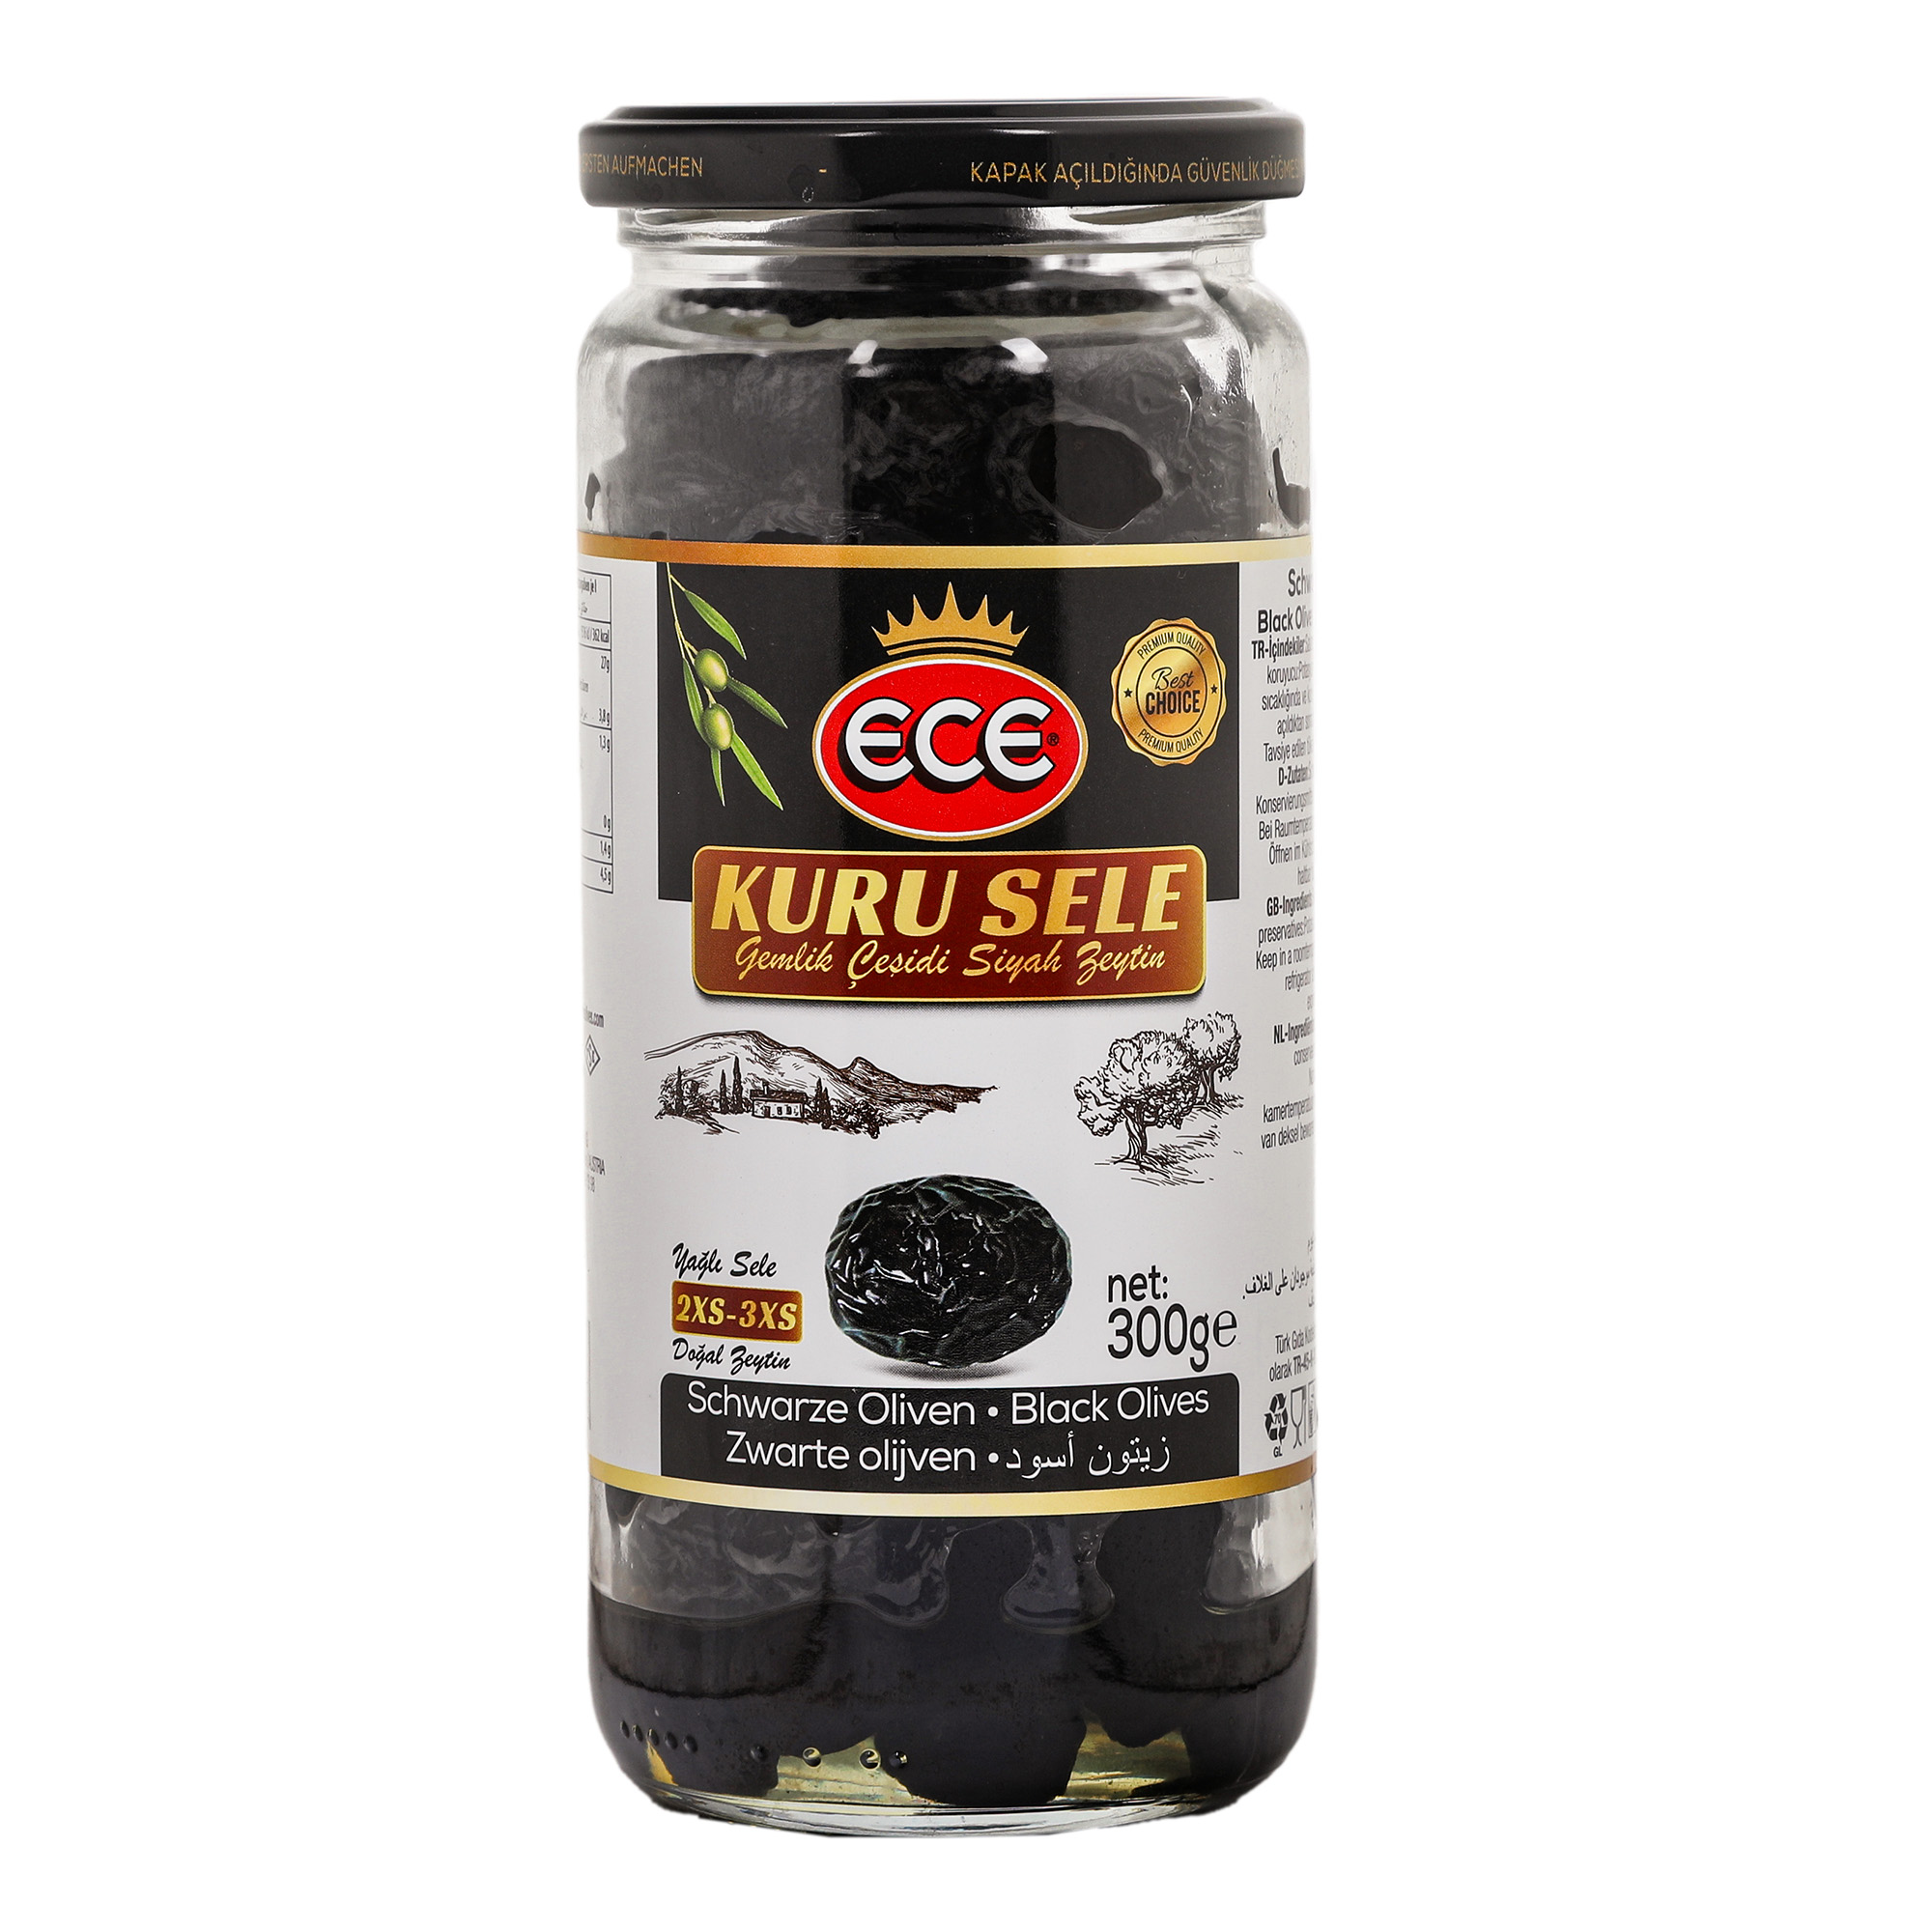 Оливки черные Ece Kuru Sele в масле с косточкой, 300 г маслины hungrow без косточек 300 гр